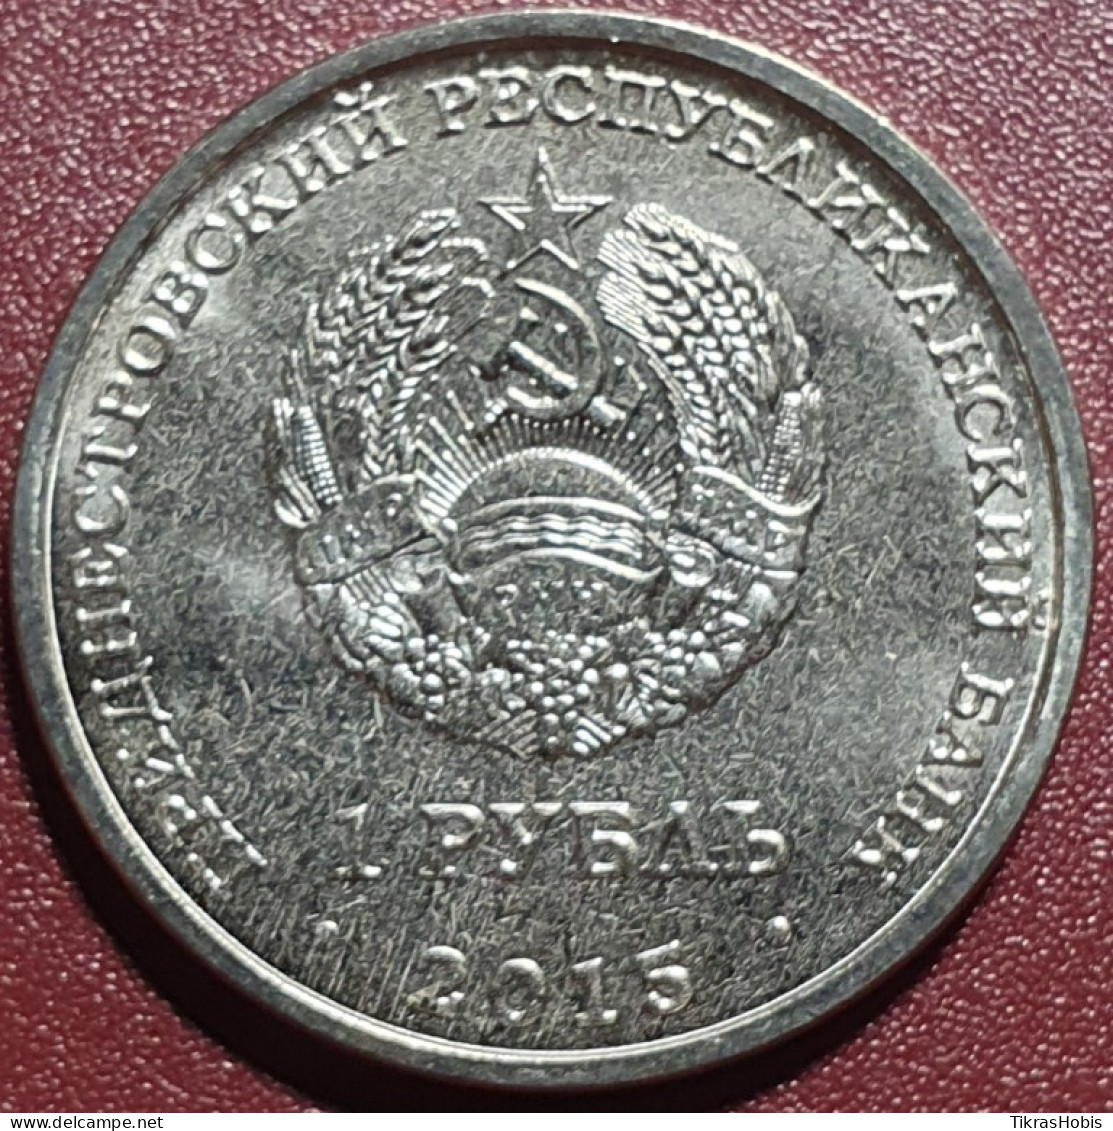 Moldova, Transnistria 1 Ruble, 2015 In The Great Patriotic War 70 UC111 - Moldavia